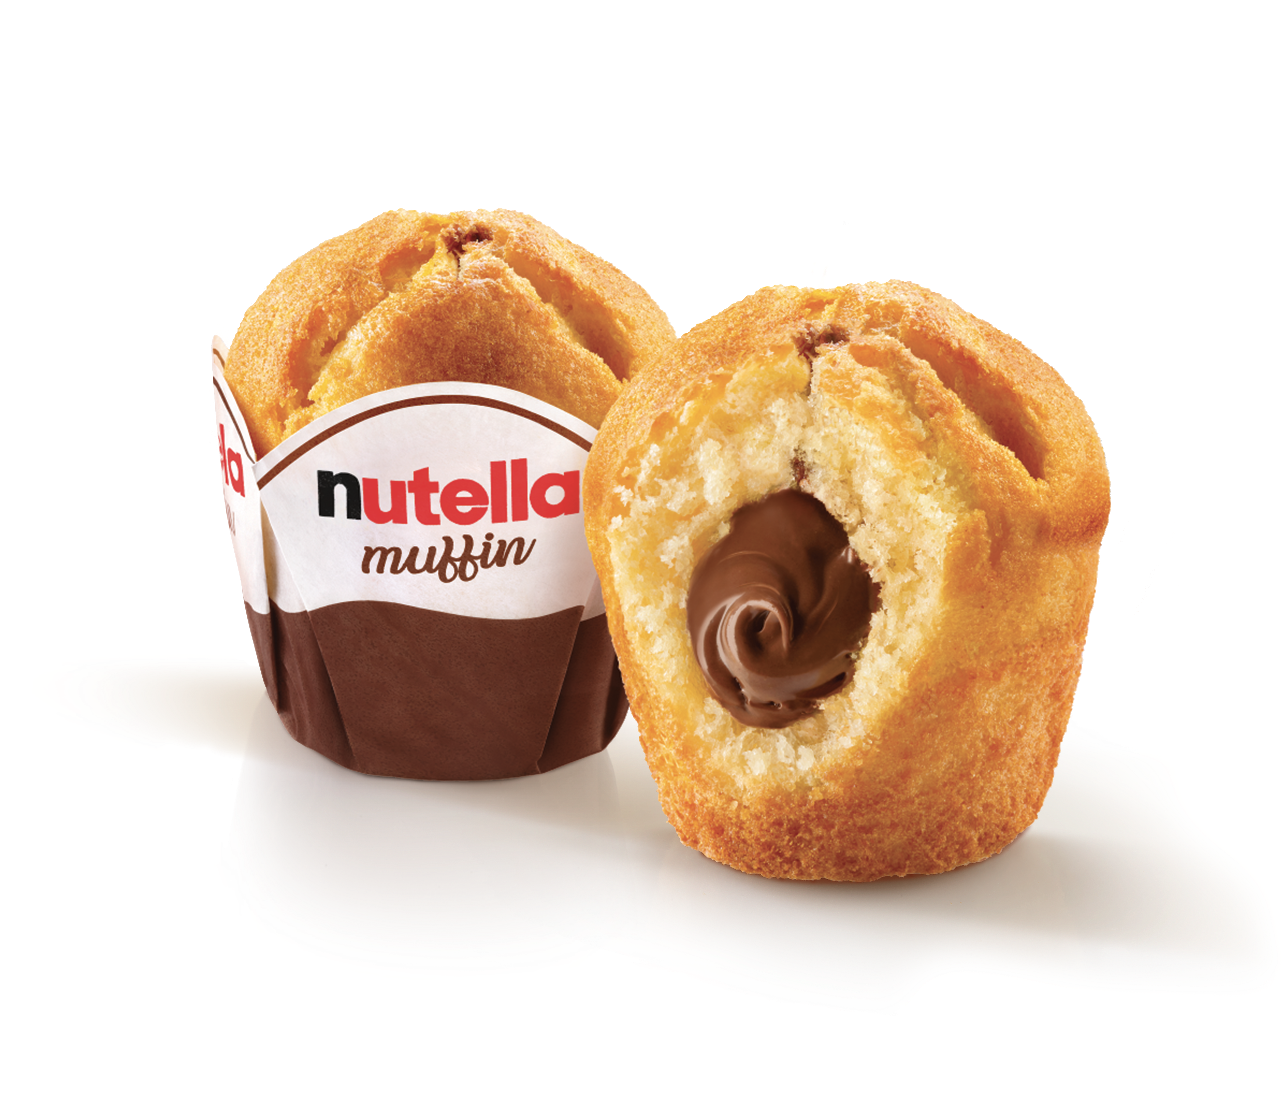 The Nutella® Muffin